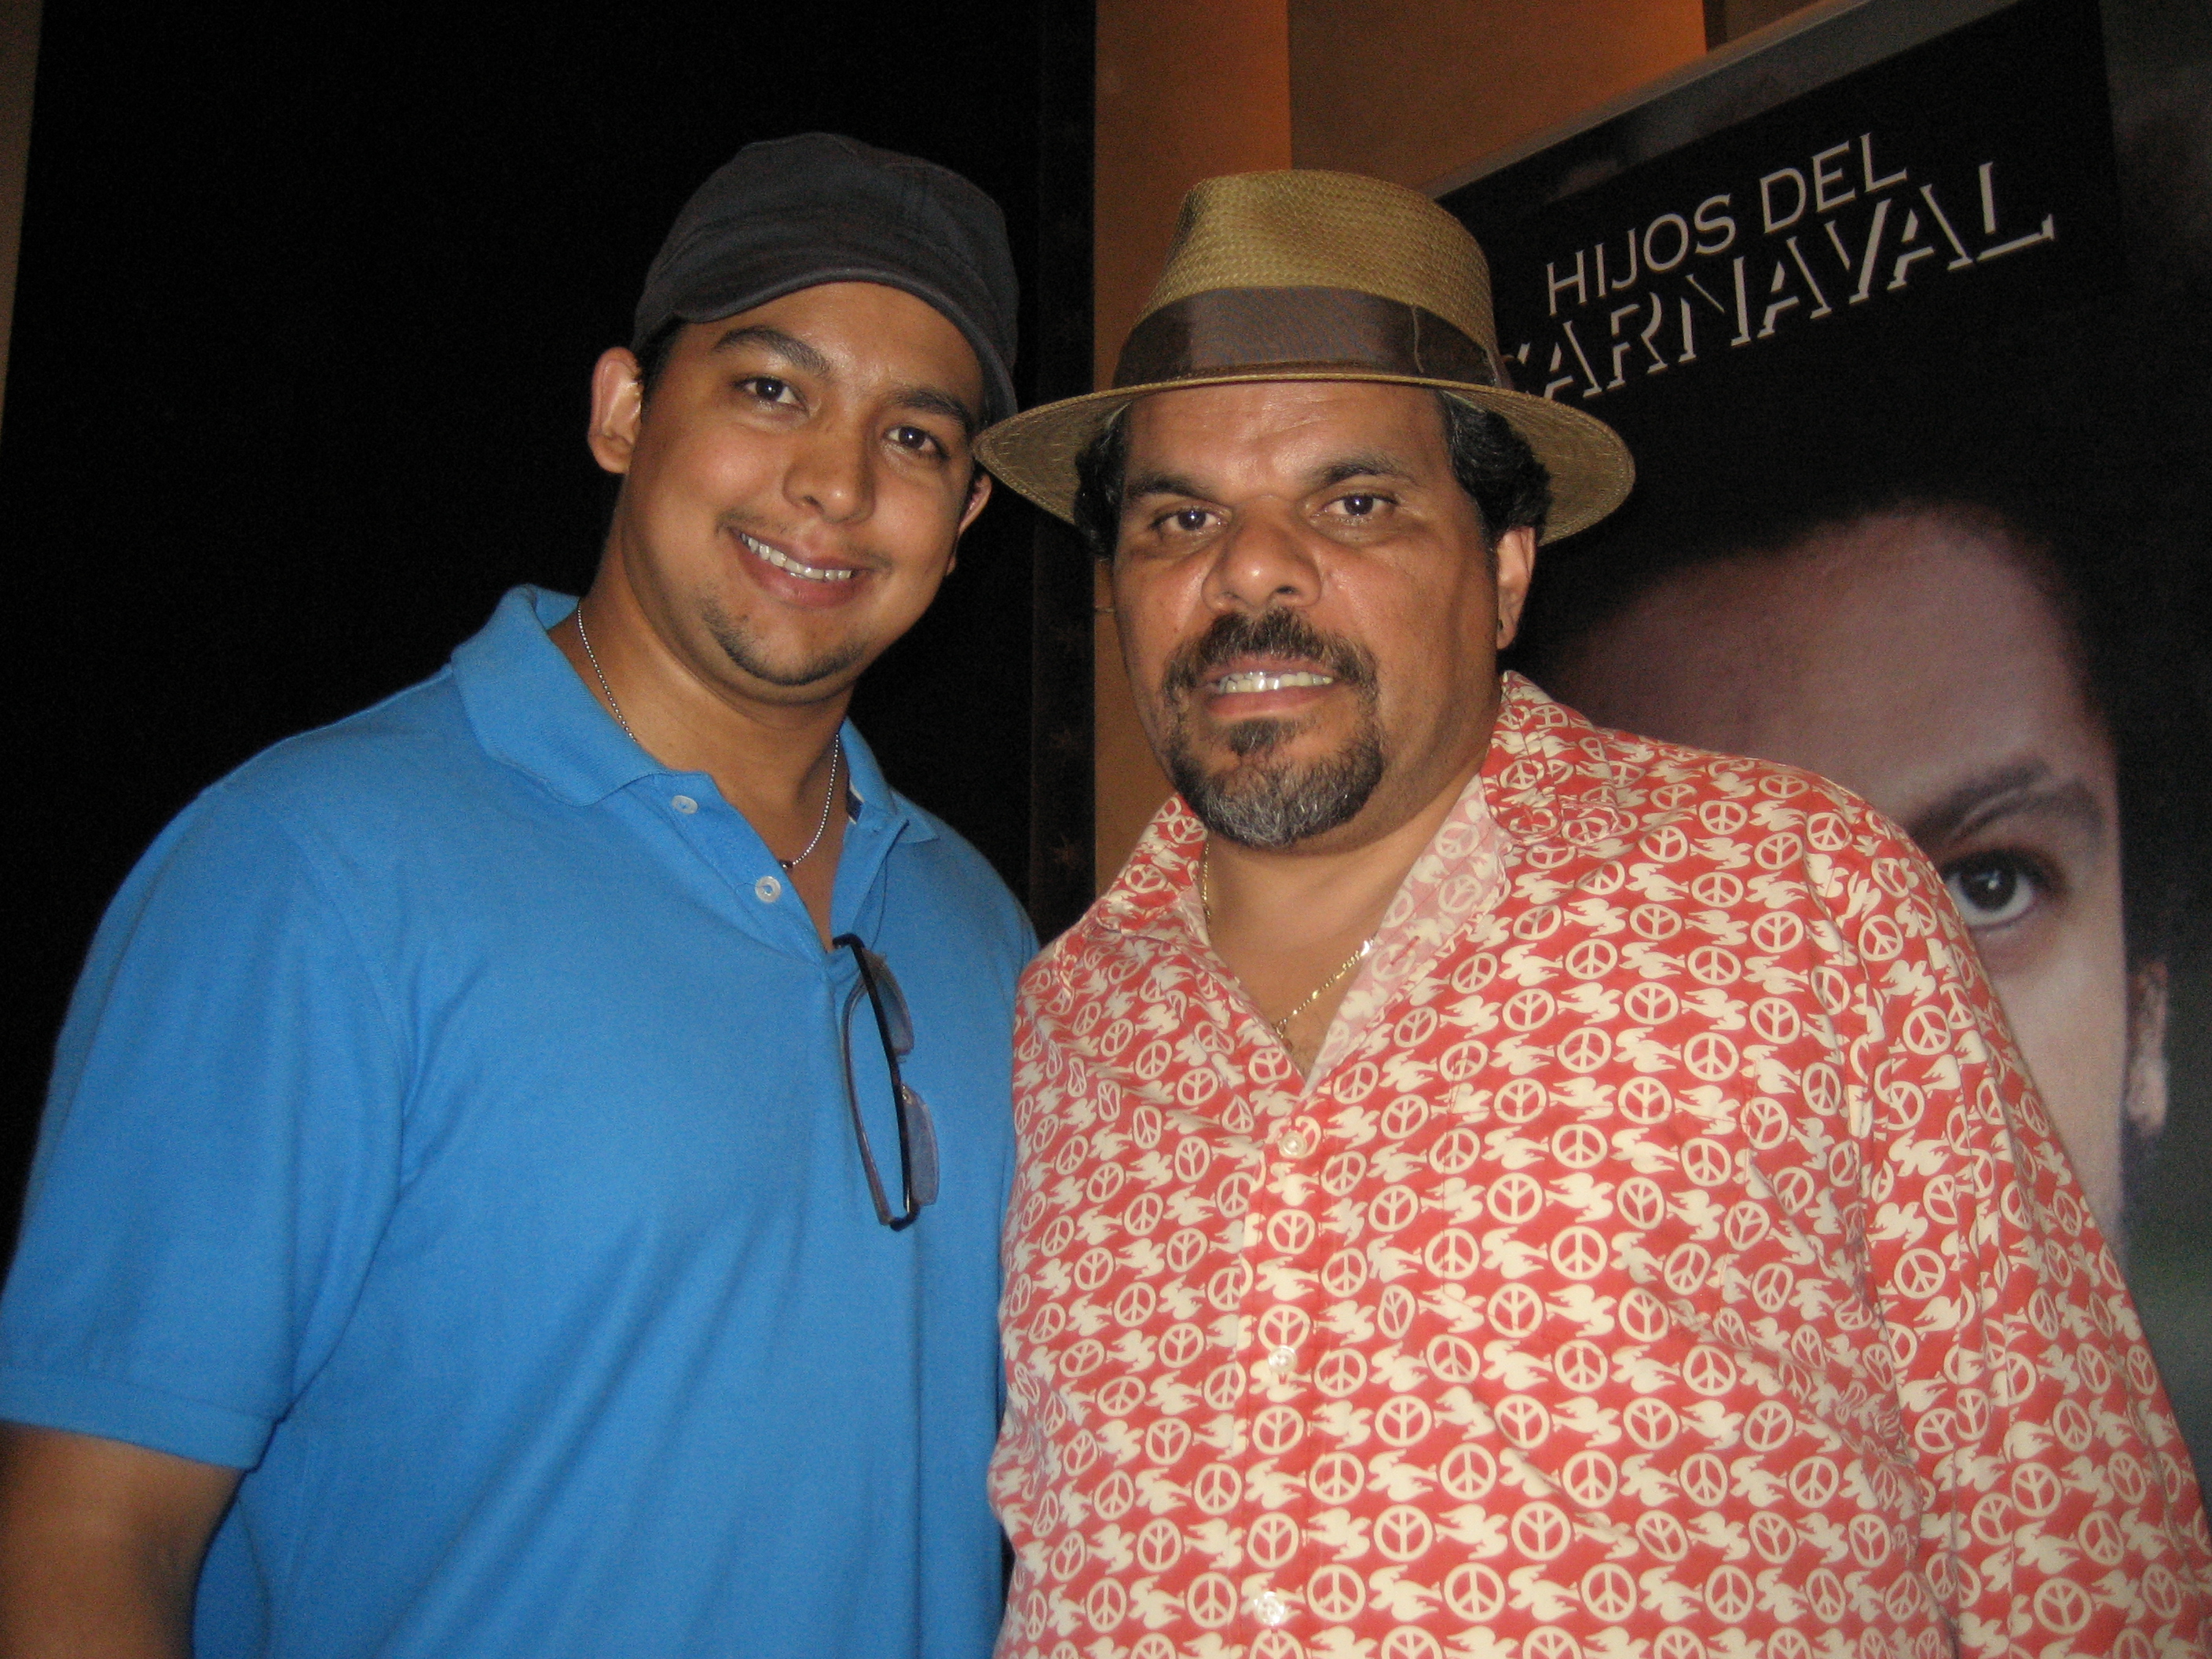 Ed Garcia with Luis Guzman, NYC 2008.